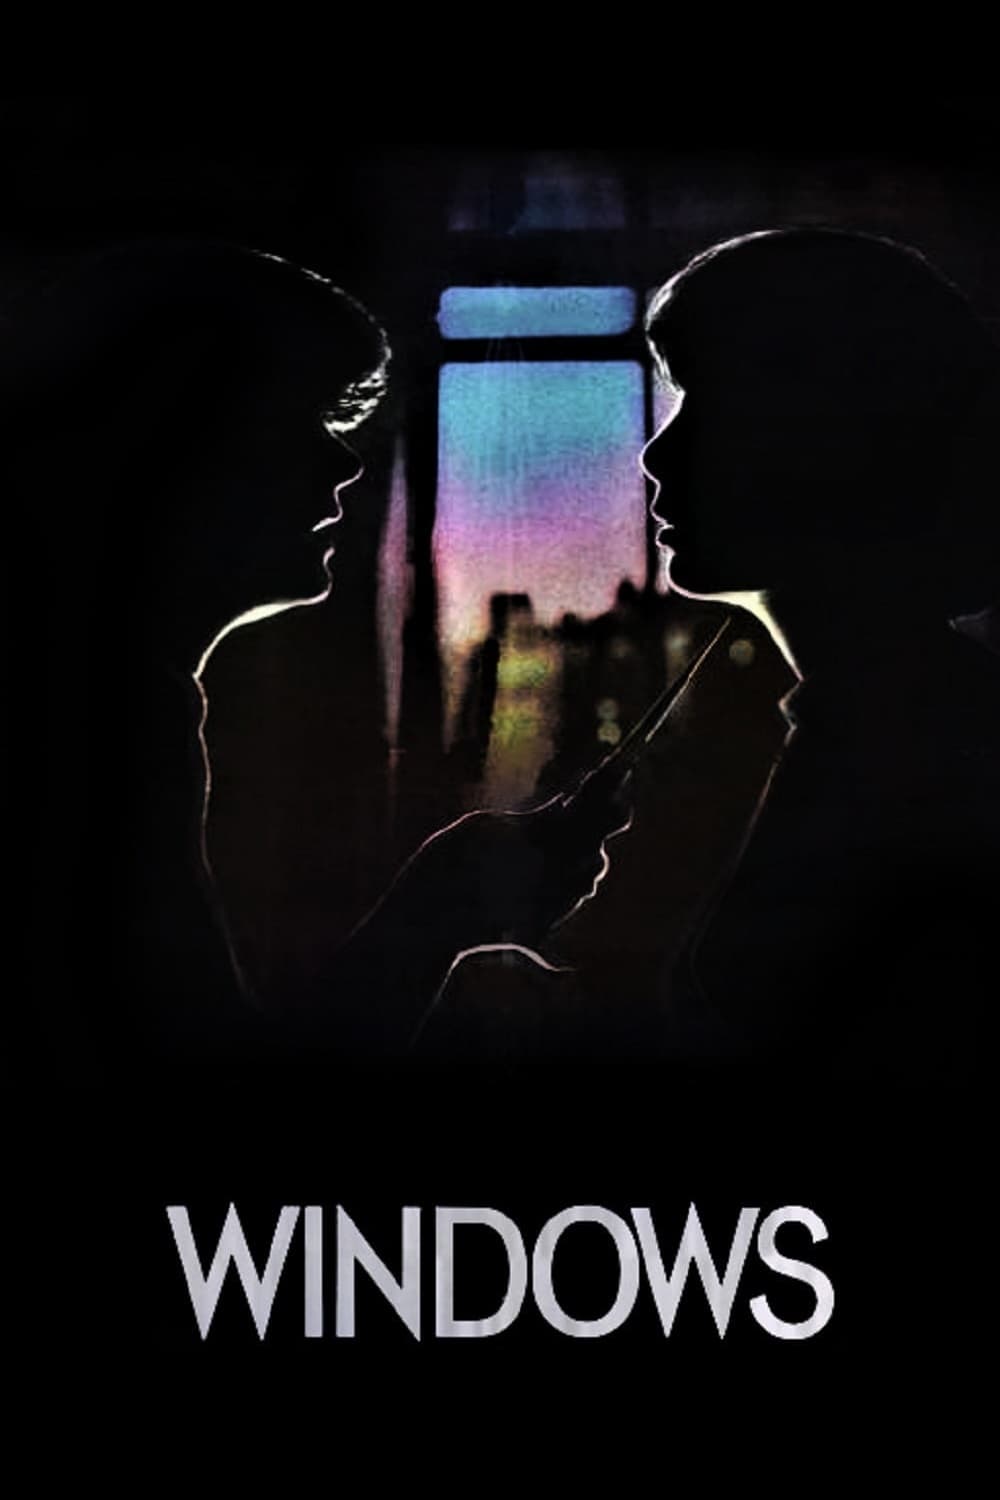 Windows (1980)